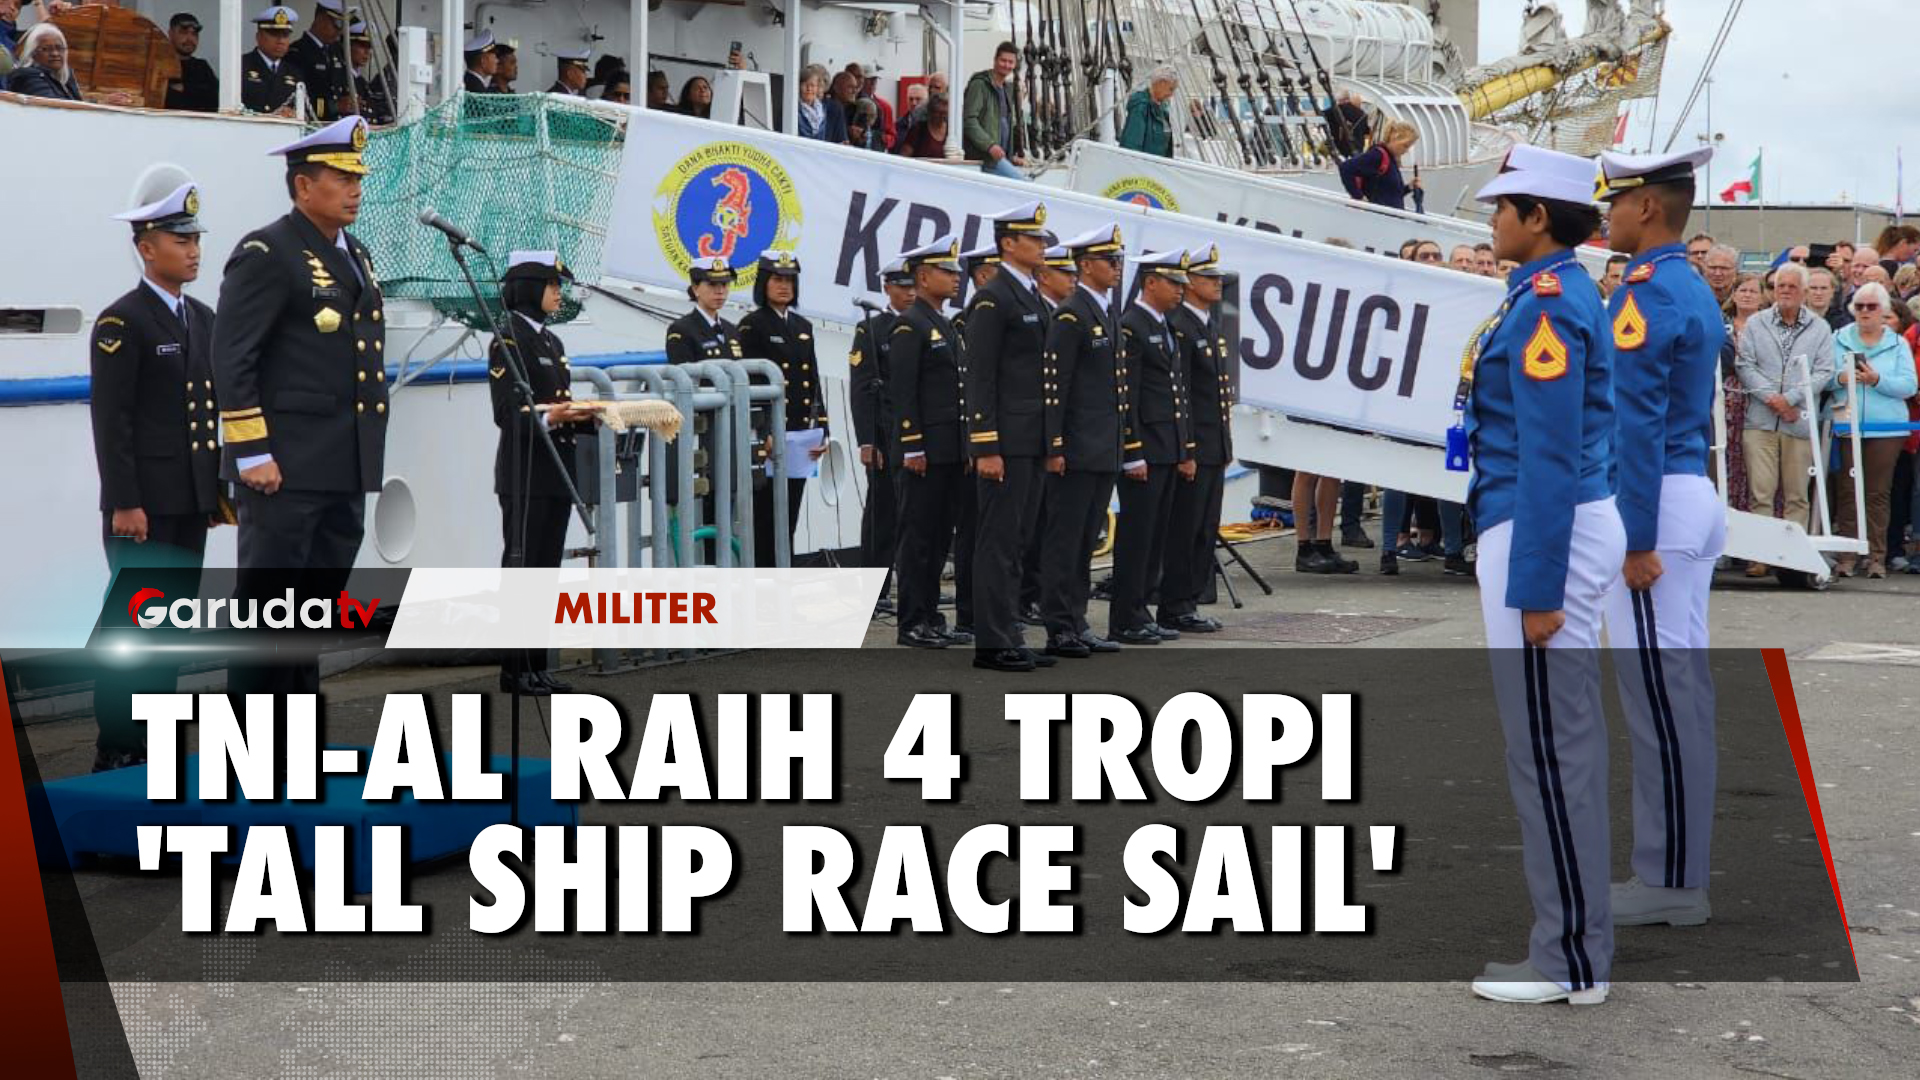 Bersama KRI Bima Suci, TNI AL Berhasil Raih 4 Tropi Tall Ship Race Sail di Belanda